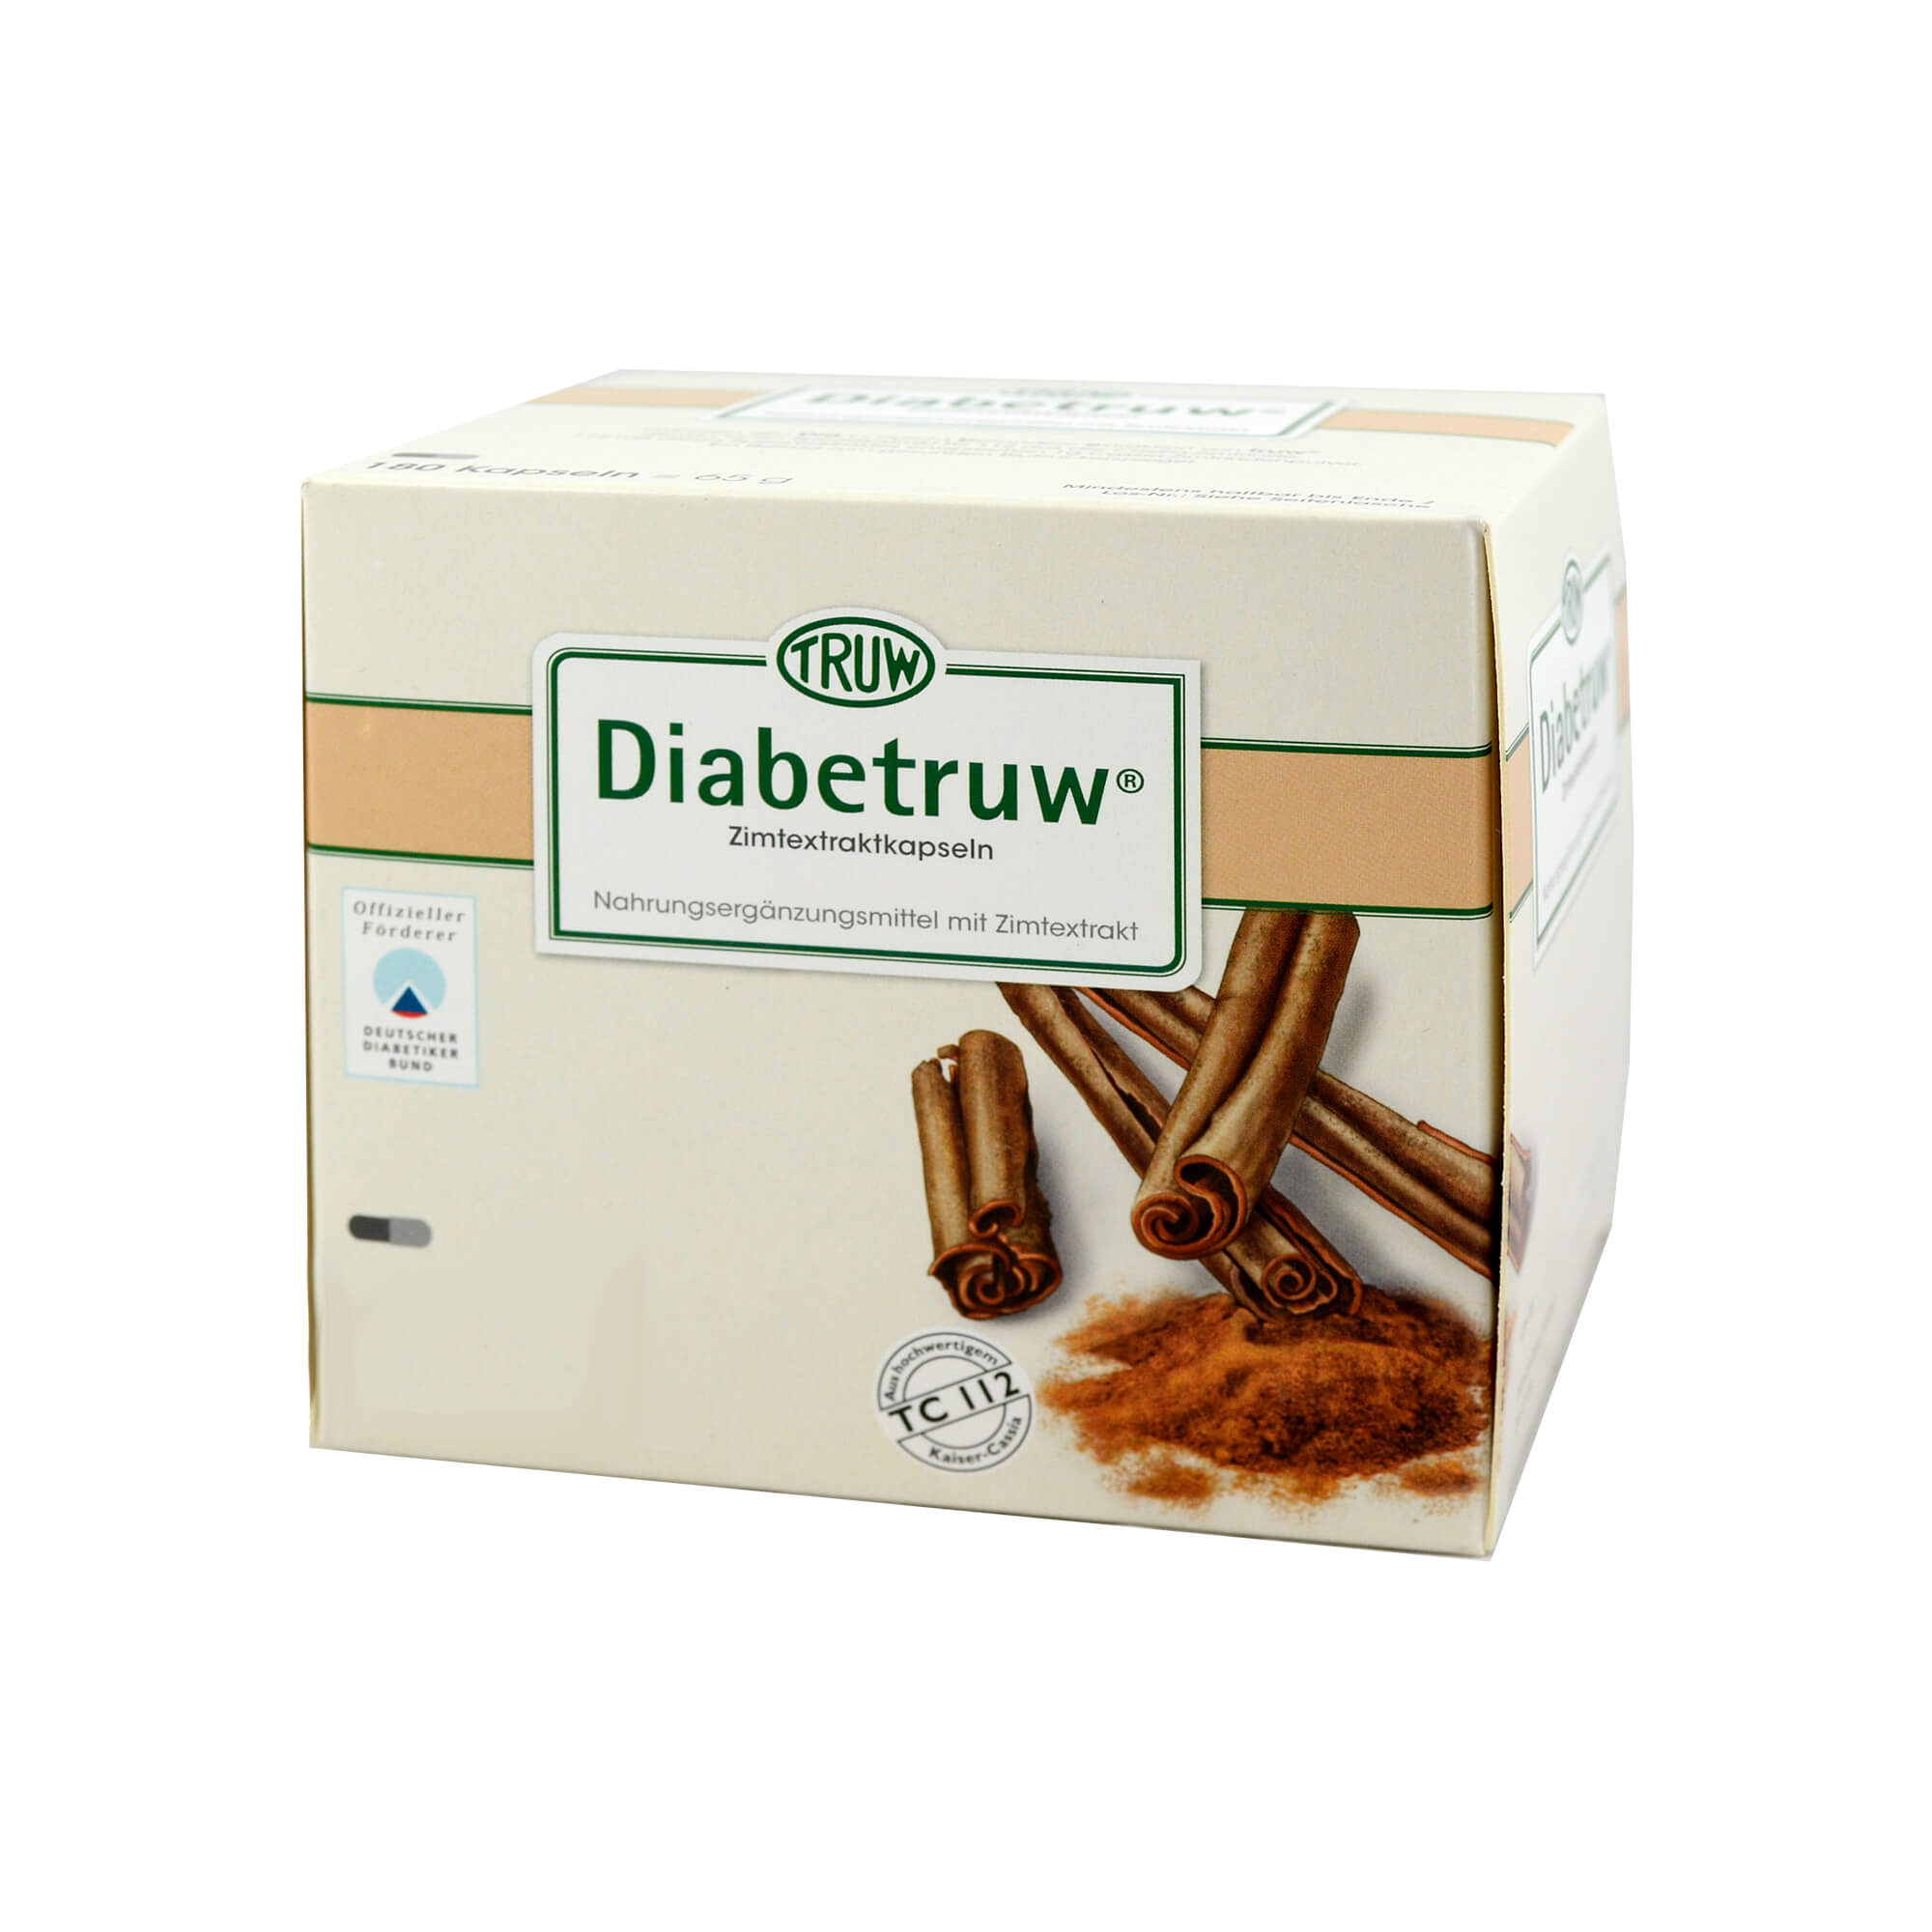 Diätetisches Lebensmittel zur besonderen Ernährung bei Diabetes mellitus.